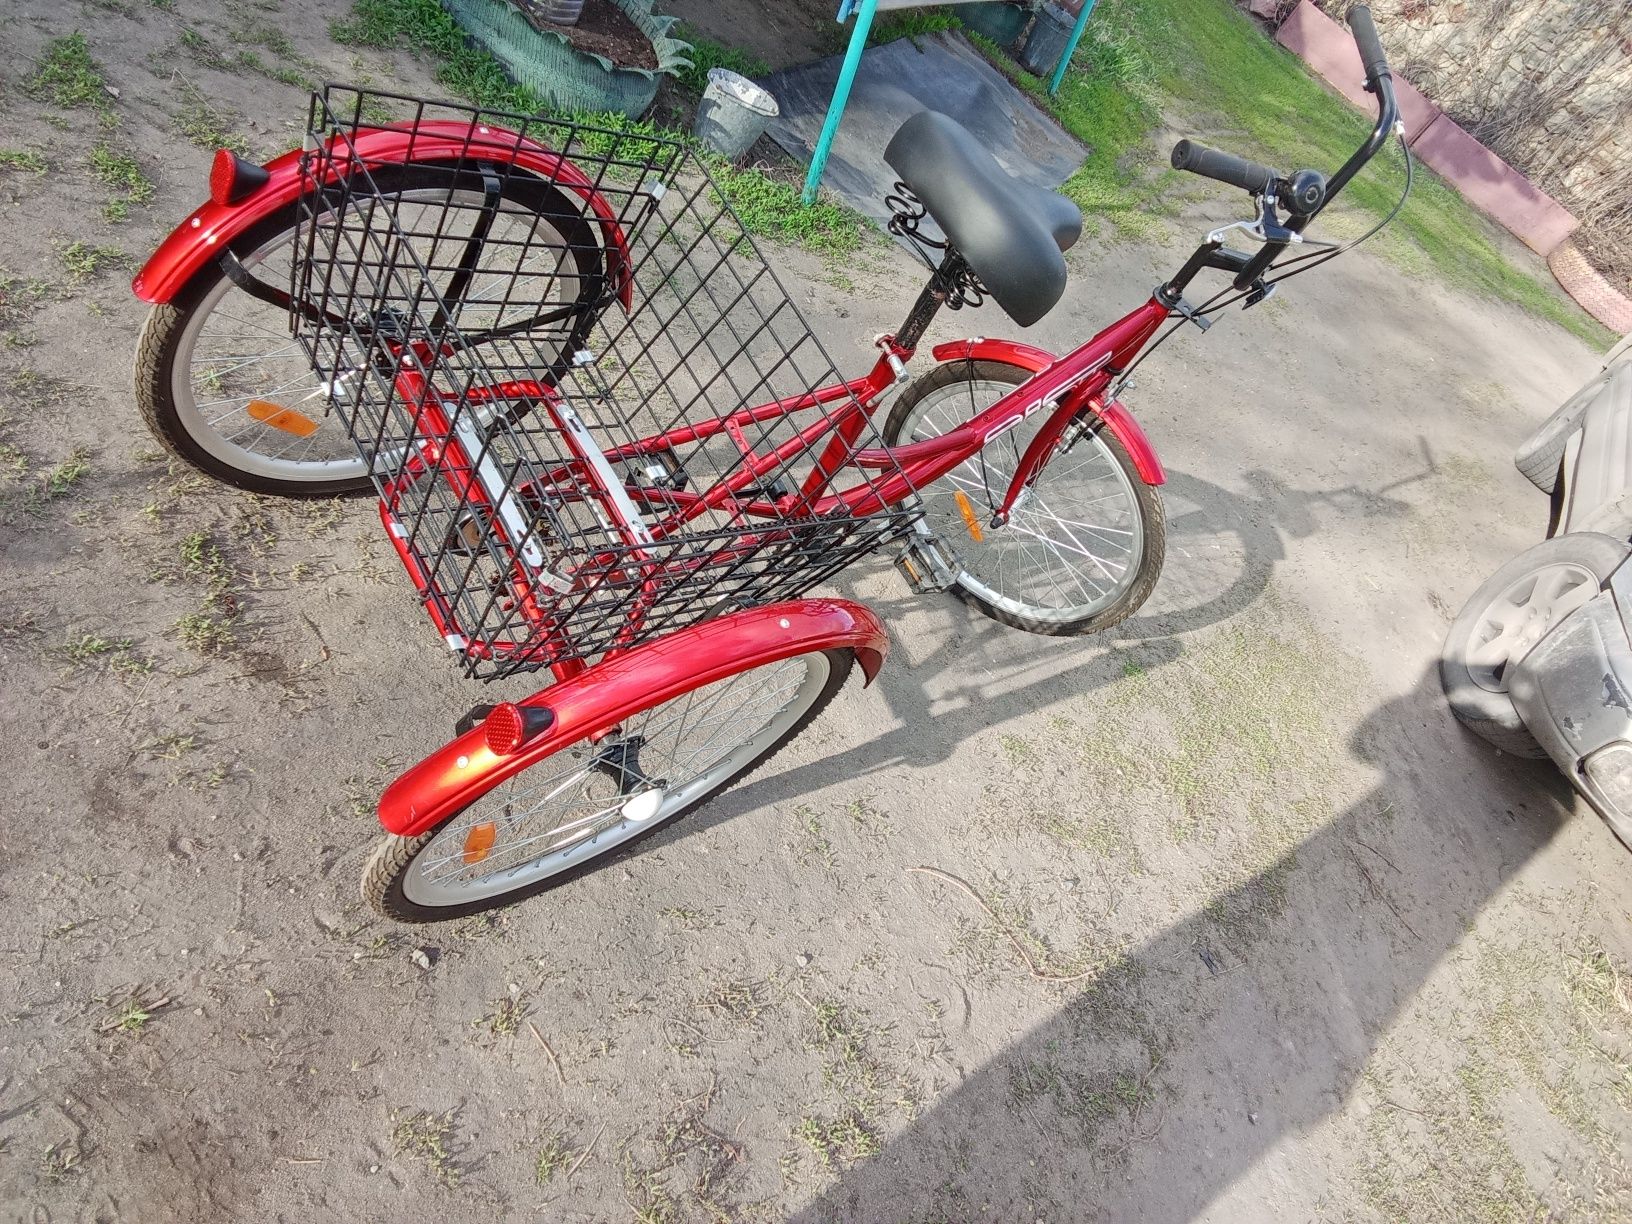 Продам взрослый 3х колесный велосипед